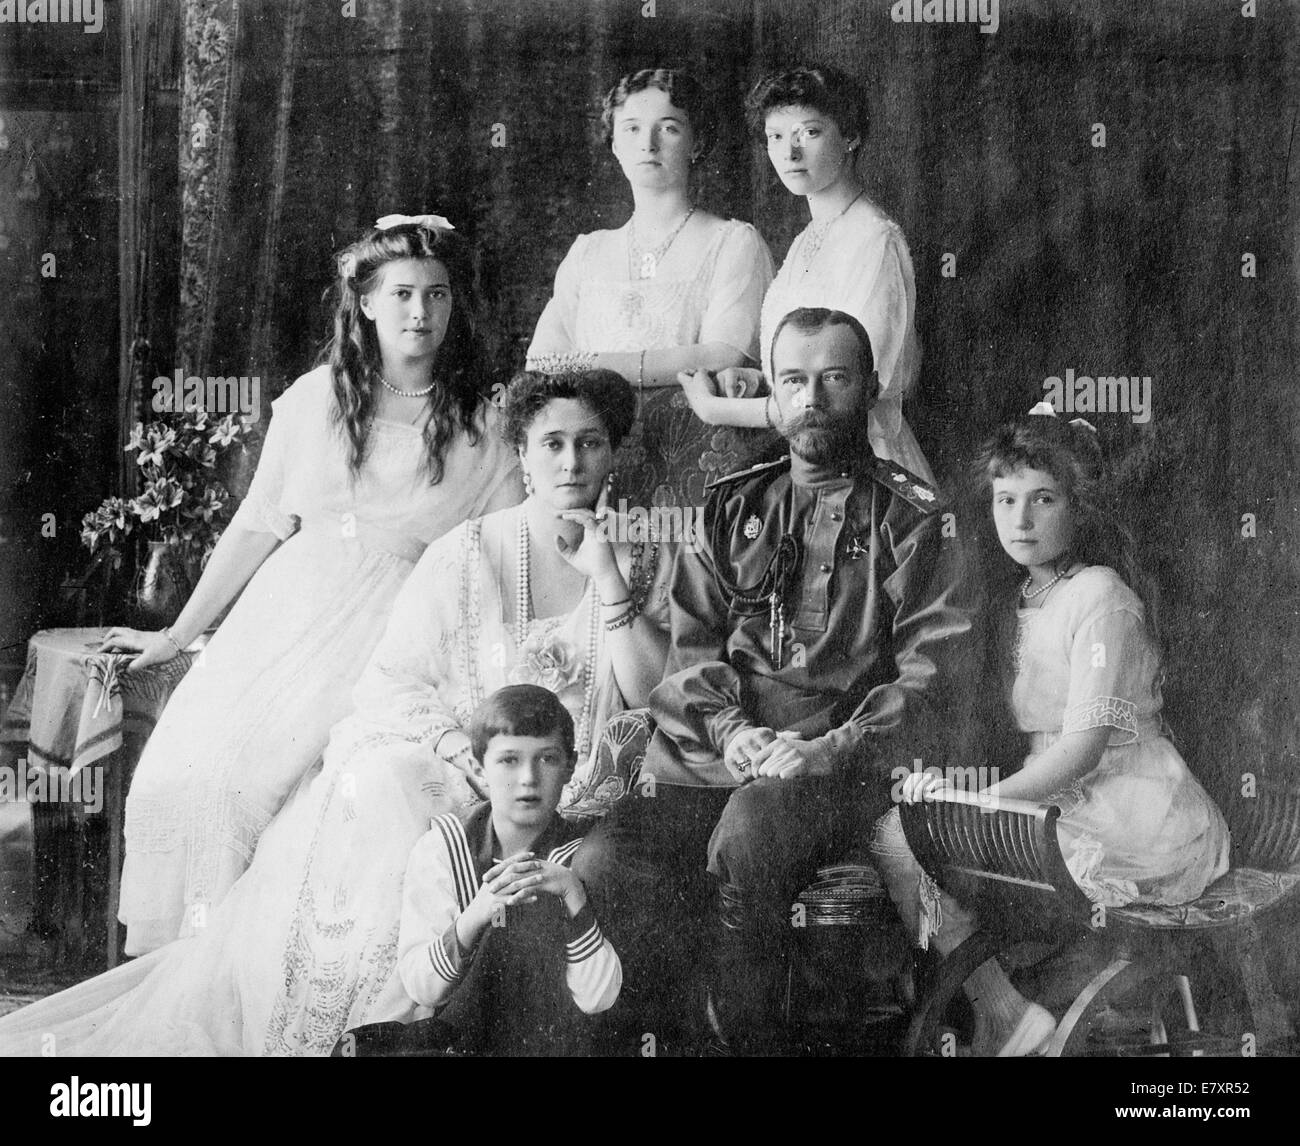 La famille russe - membres des Romanov, la dernière famille royale de Russie y compris : assis (de gauche à droite) Marie, la Reine Alexandra, le Tsar Nicholas II, Anastasia, Alexei (avant), et debout (de gauche à droite), Olga et Tatiana, vers 1914 Banque D'Images